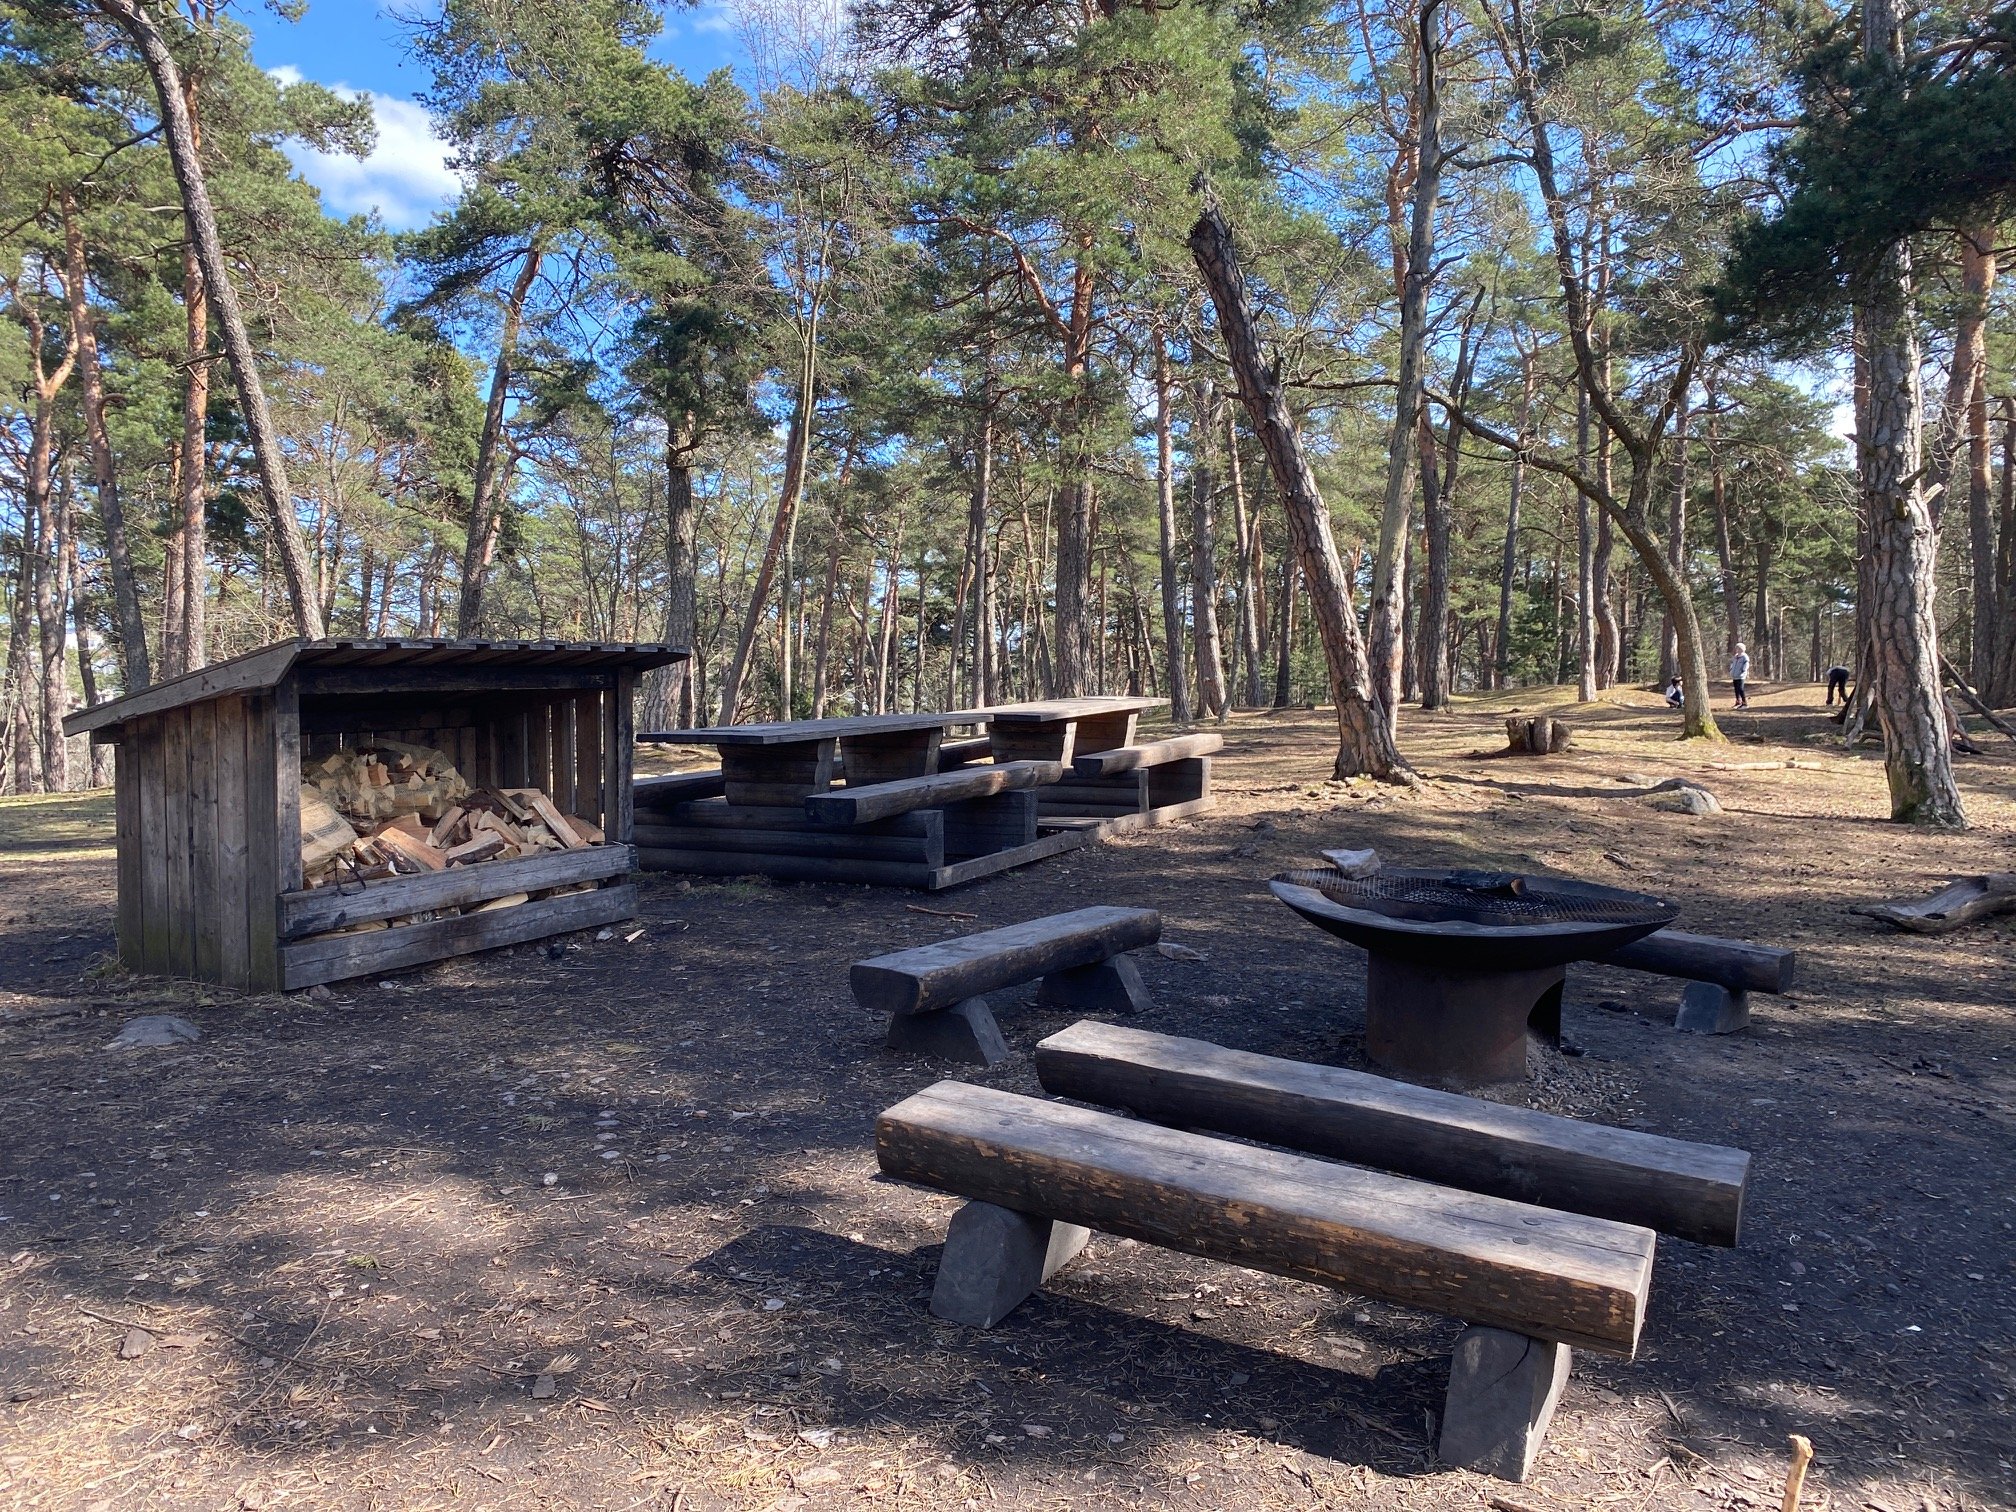 På en öppen yta i skogen står en grillplats med flera sittbänkar. Runtom grillplatsen finns flera bänkbord och ett vedförråd.